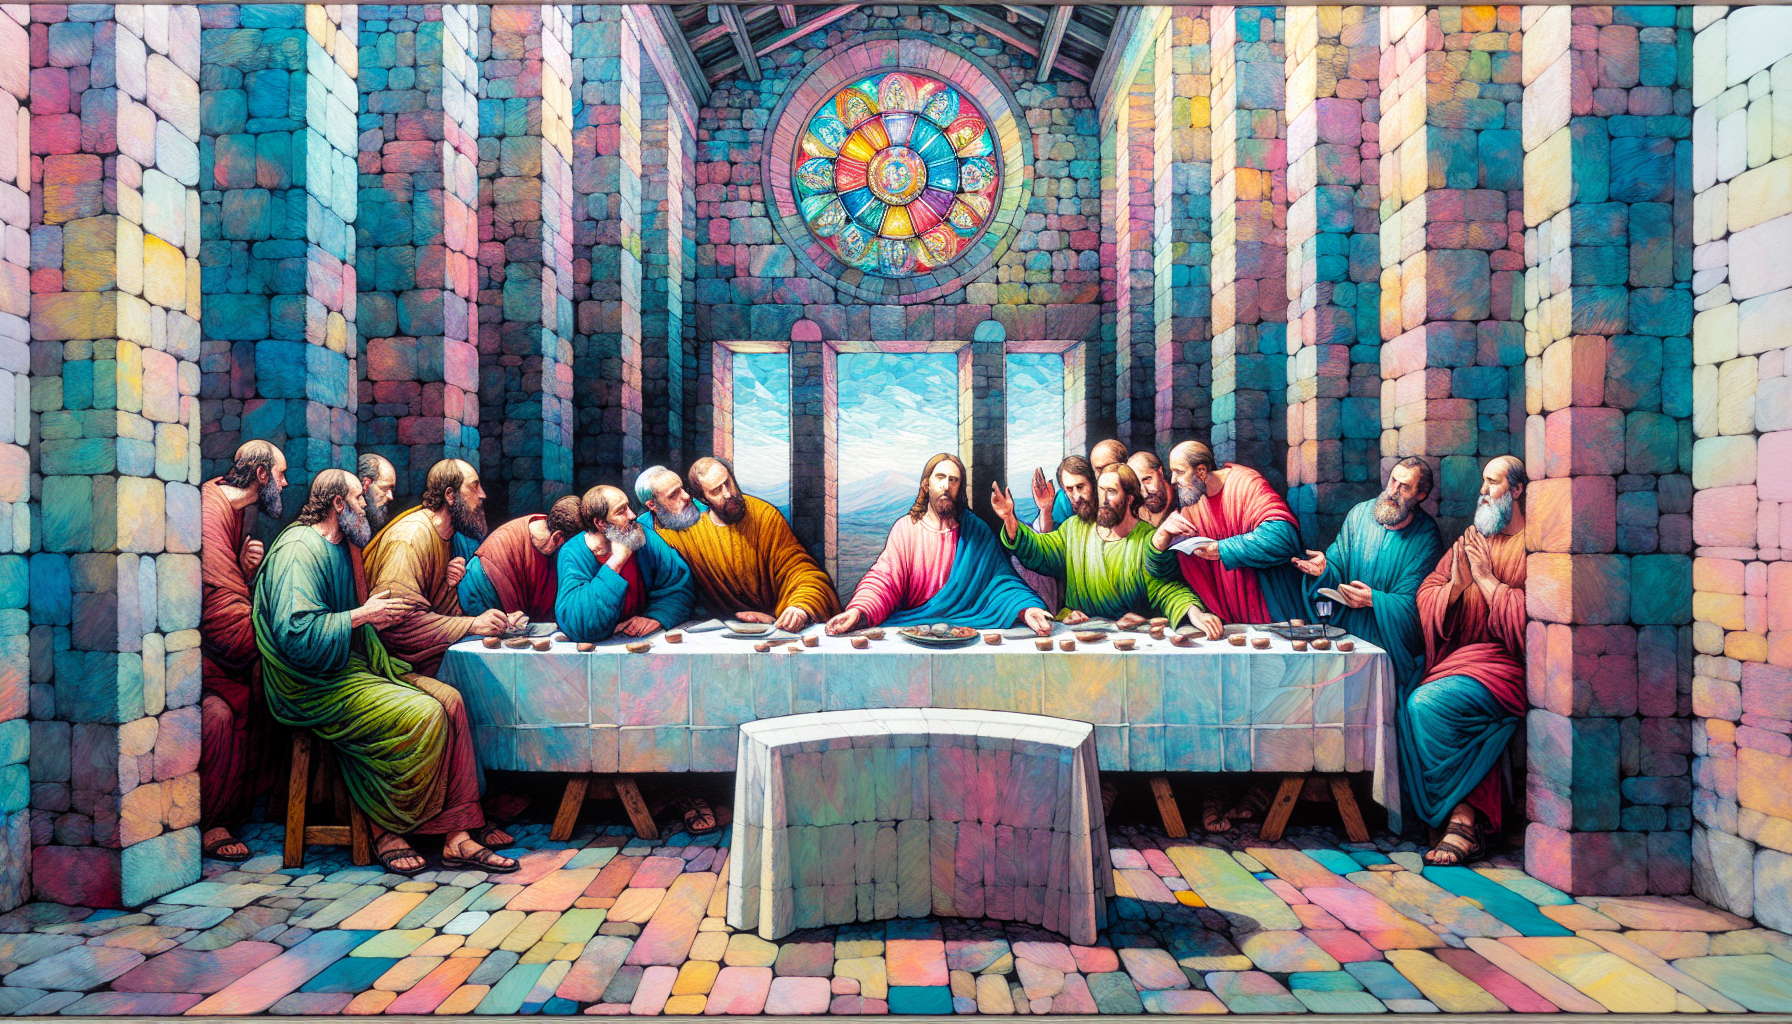 Una pintura al óleo mostrando a los 12 apóstoles de Jesús reunidos alrededor de una mesa en una vieja casa de piedra, discutiendo con expresiones llenas de emoción y gestos expresivos, con un fondo de